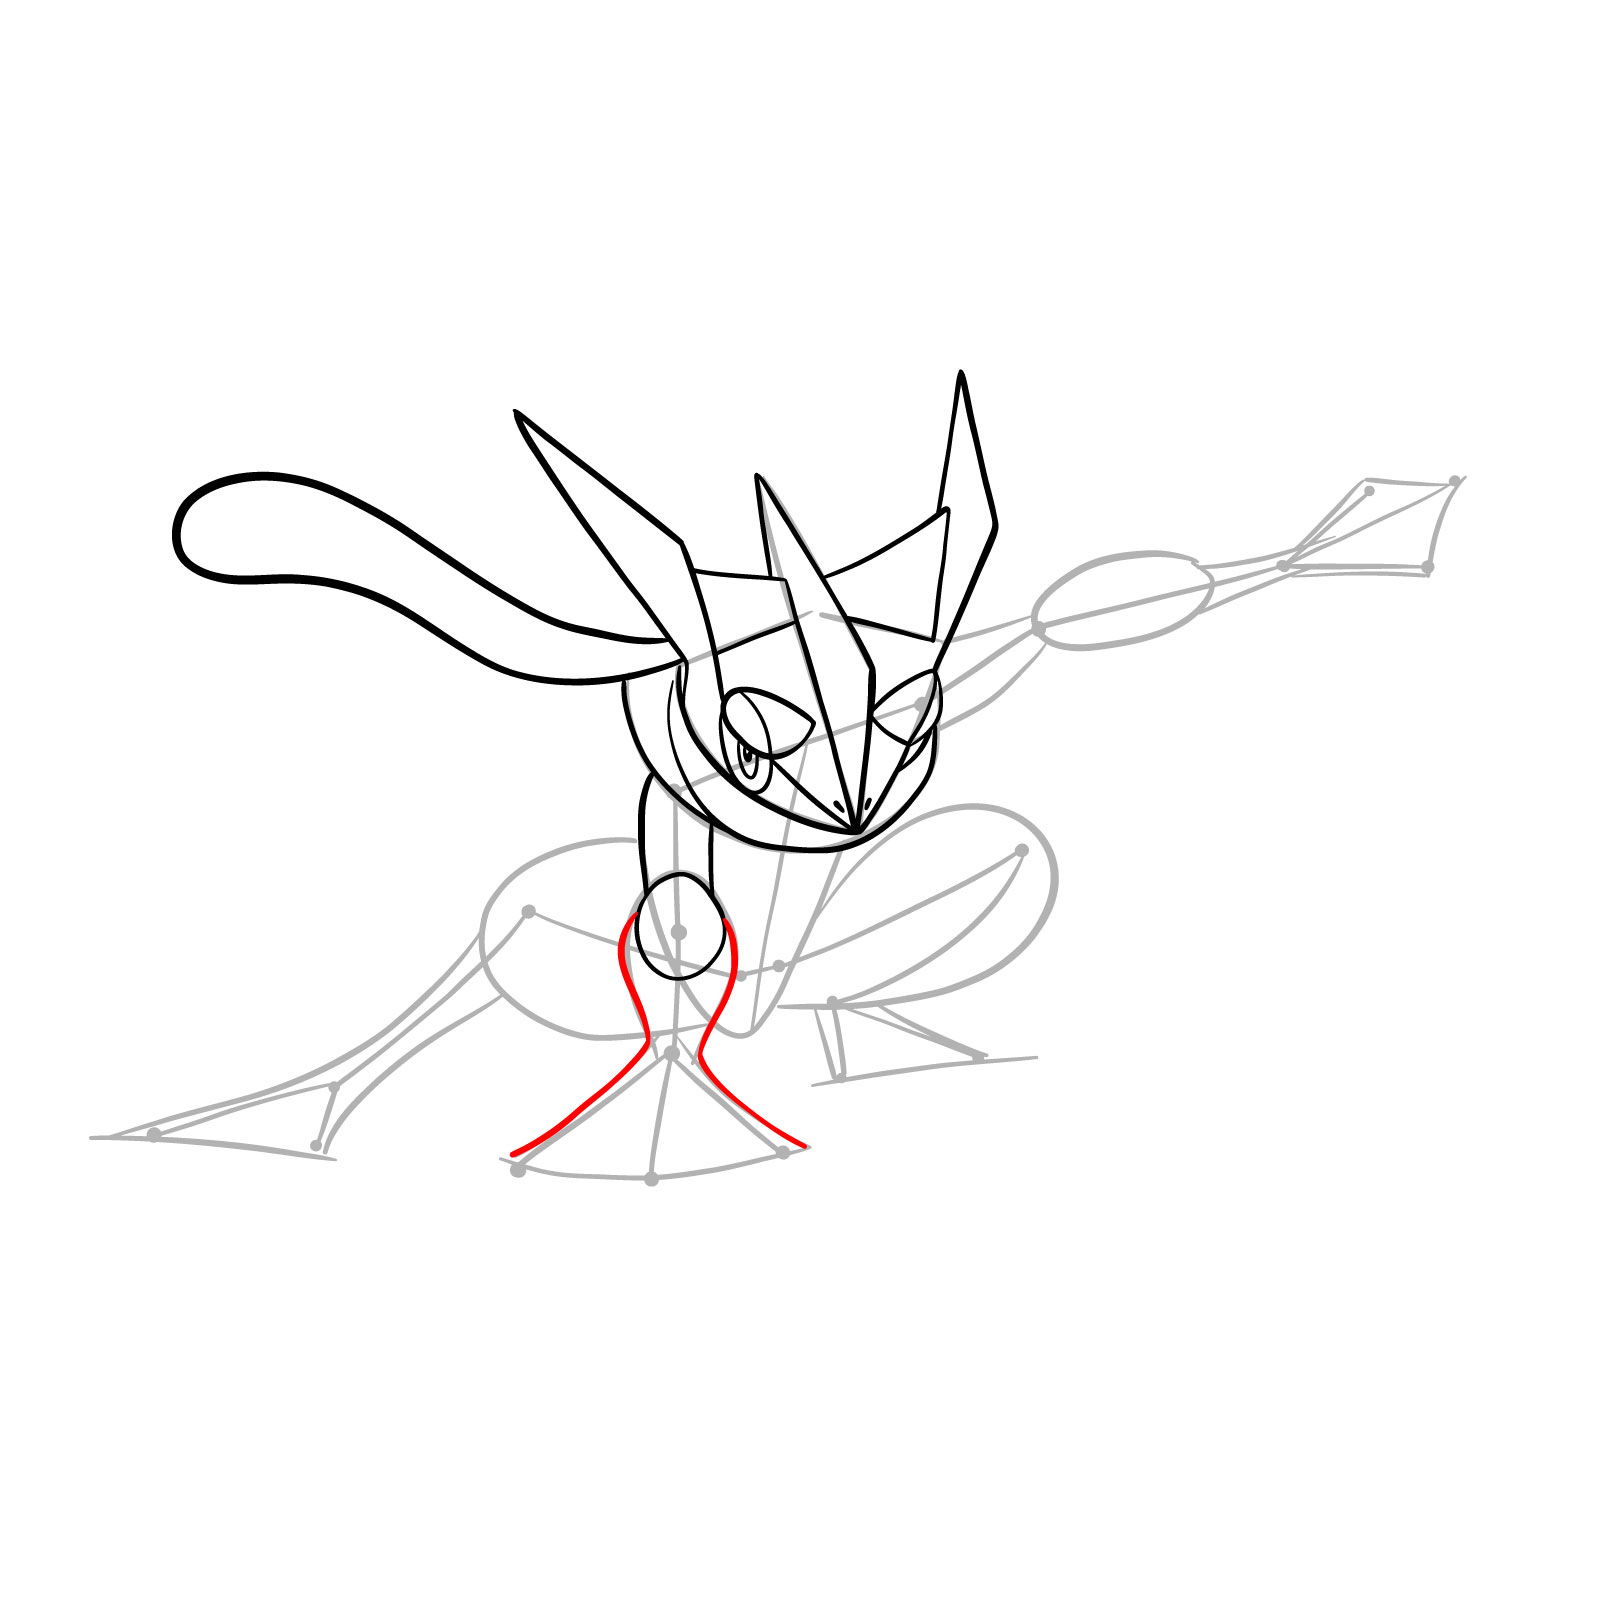 How to draw Greninja Pokemon - step 15